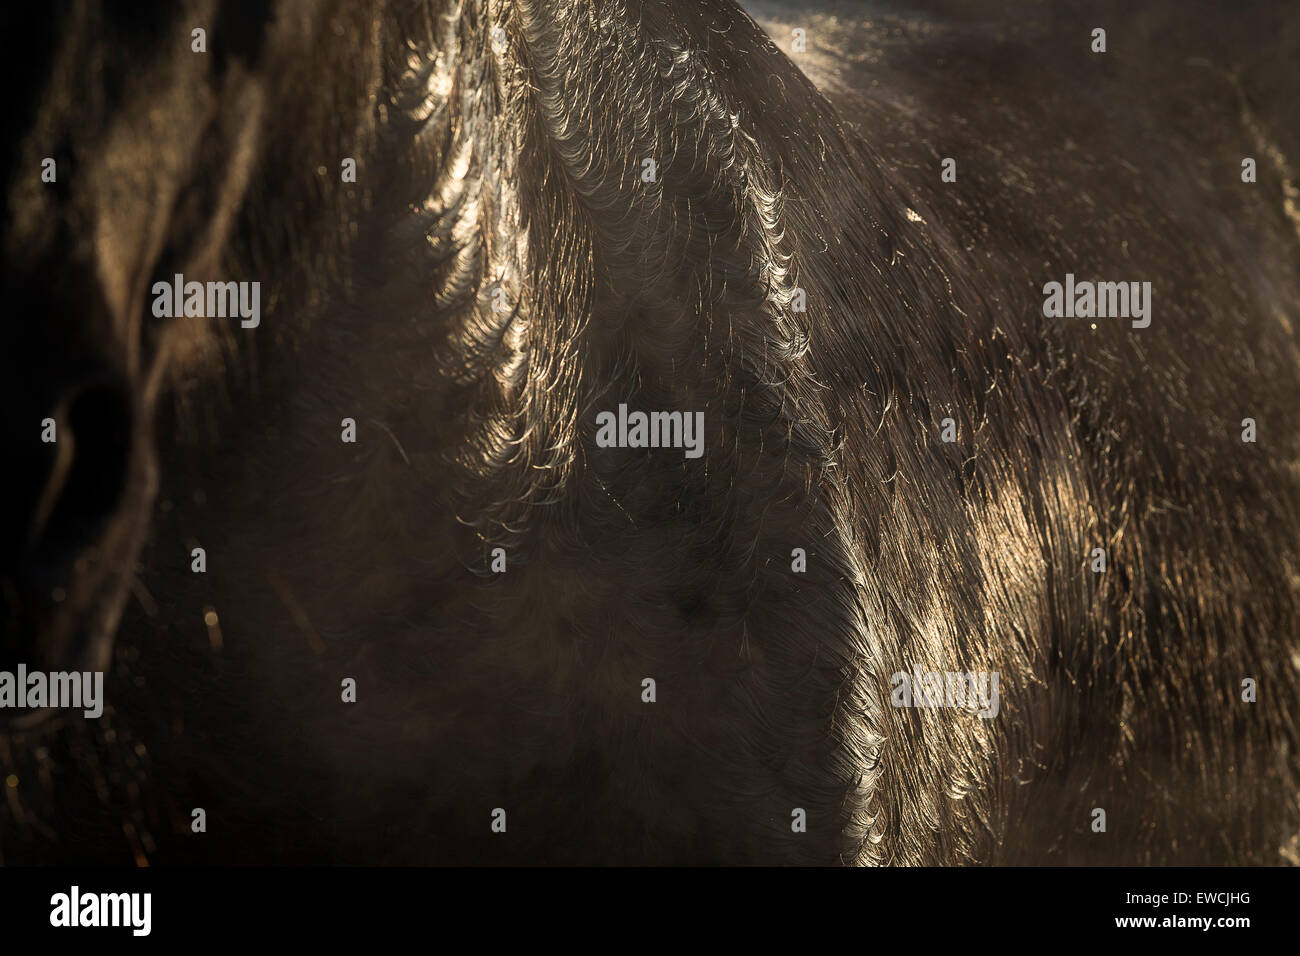 Cheval domestique. Manteau d'hiver humide d'un cheval de la baie. Allemagne Banque D'Images